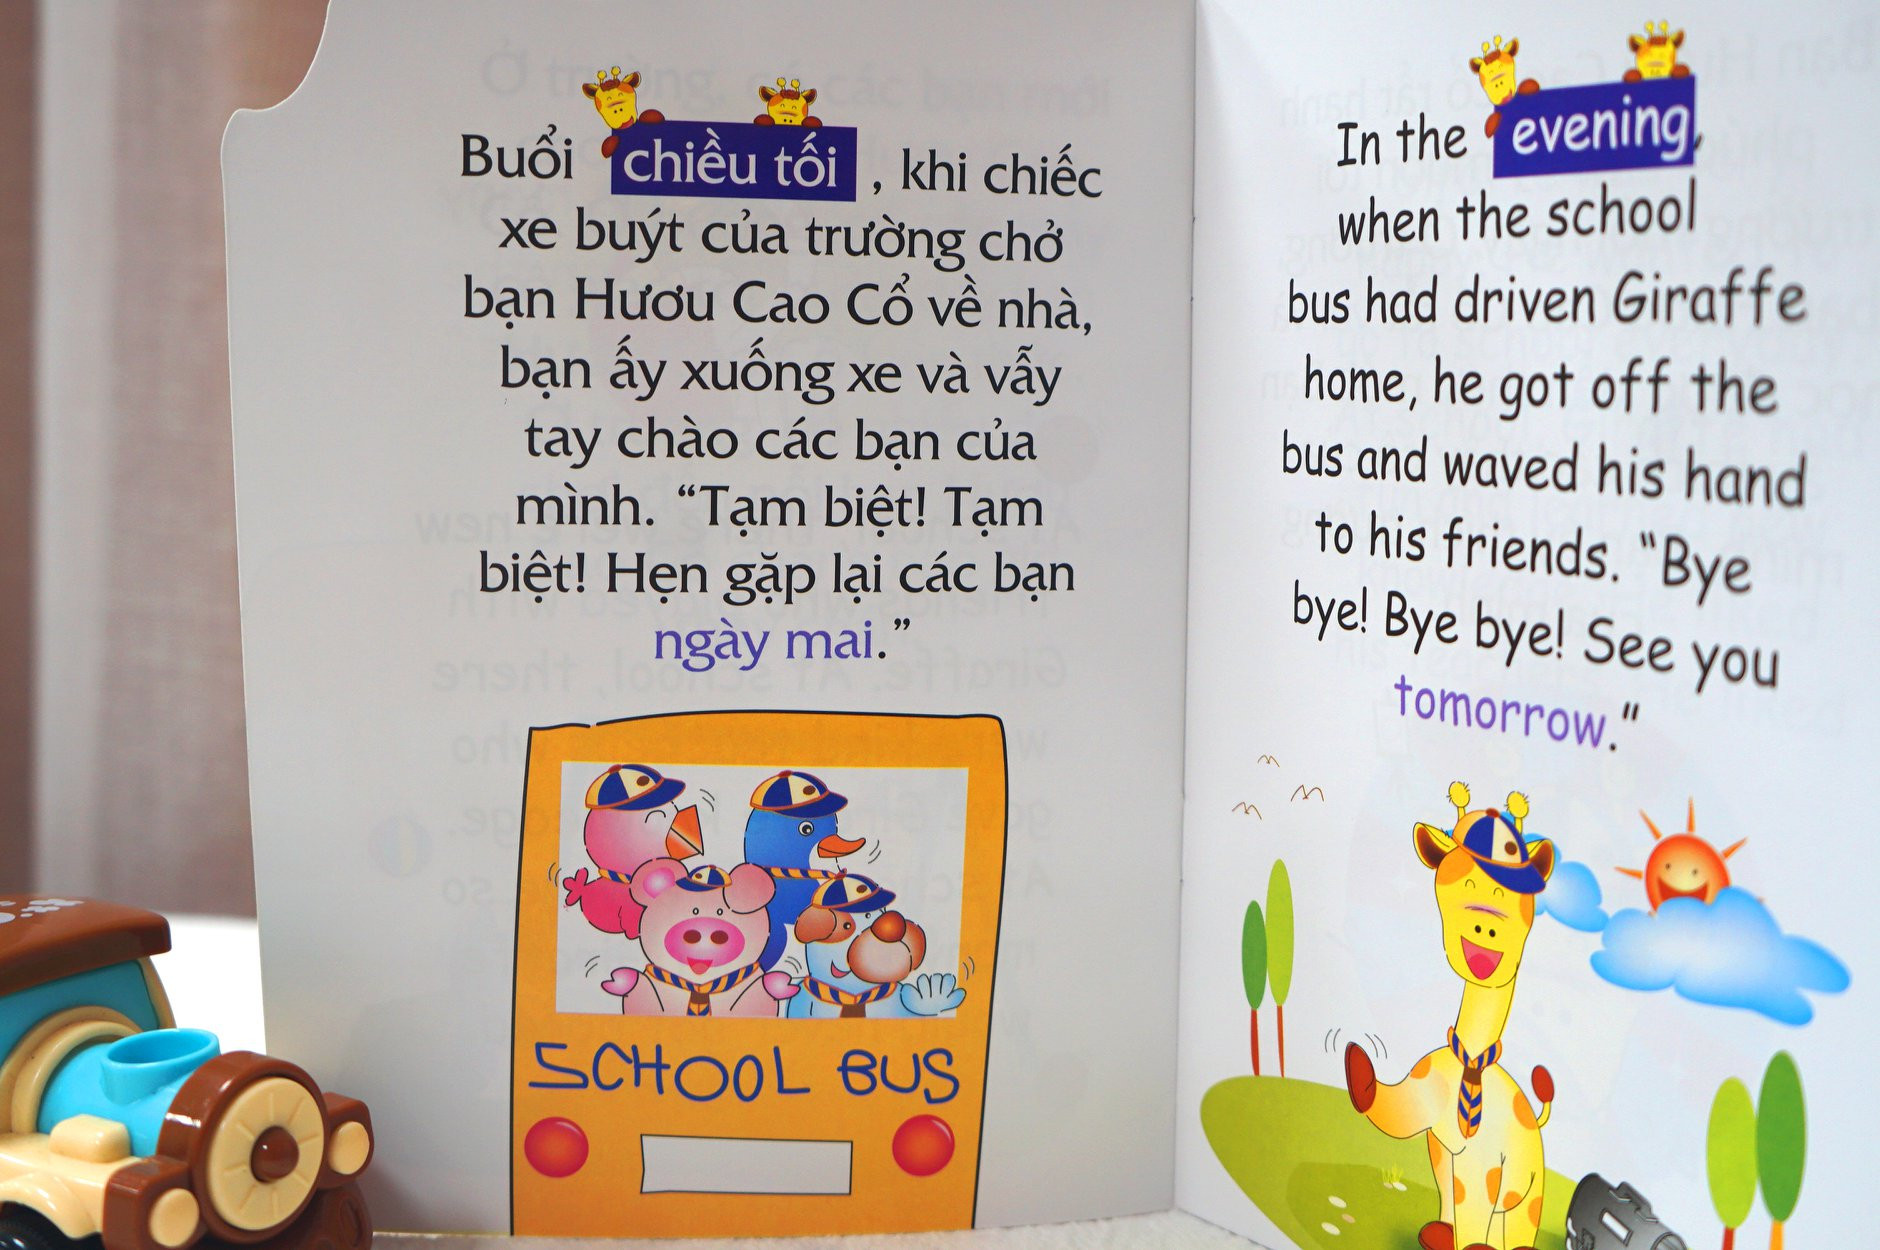 Bộ 12 Truyện tranh song ngữ Việt Anh rèn thói quen tốt cho bé - Đinh Tị - thích hợp bé 3-12 tuổi